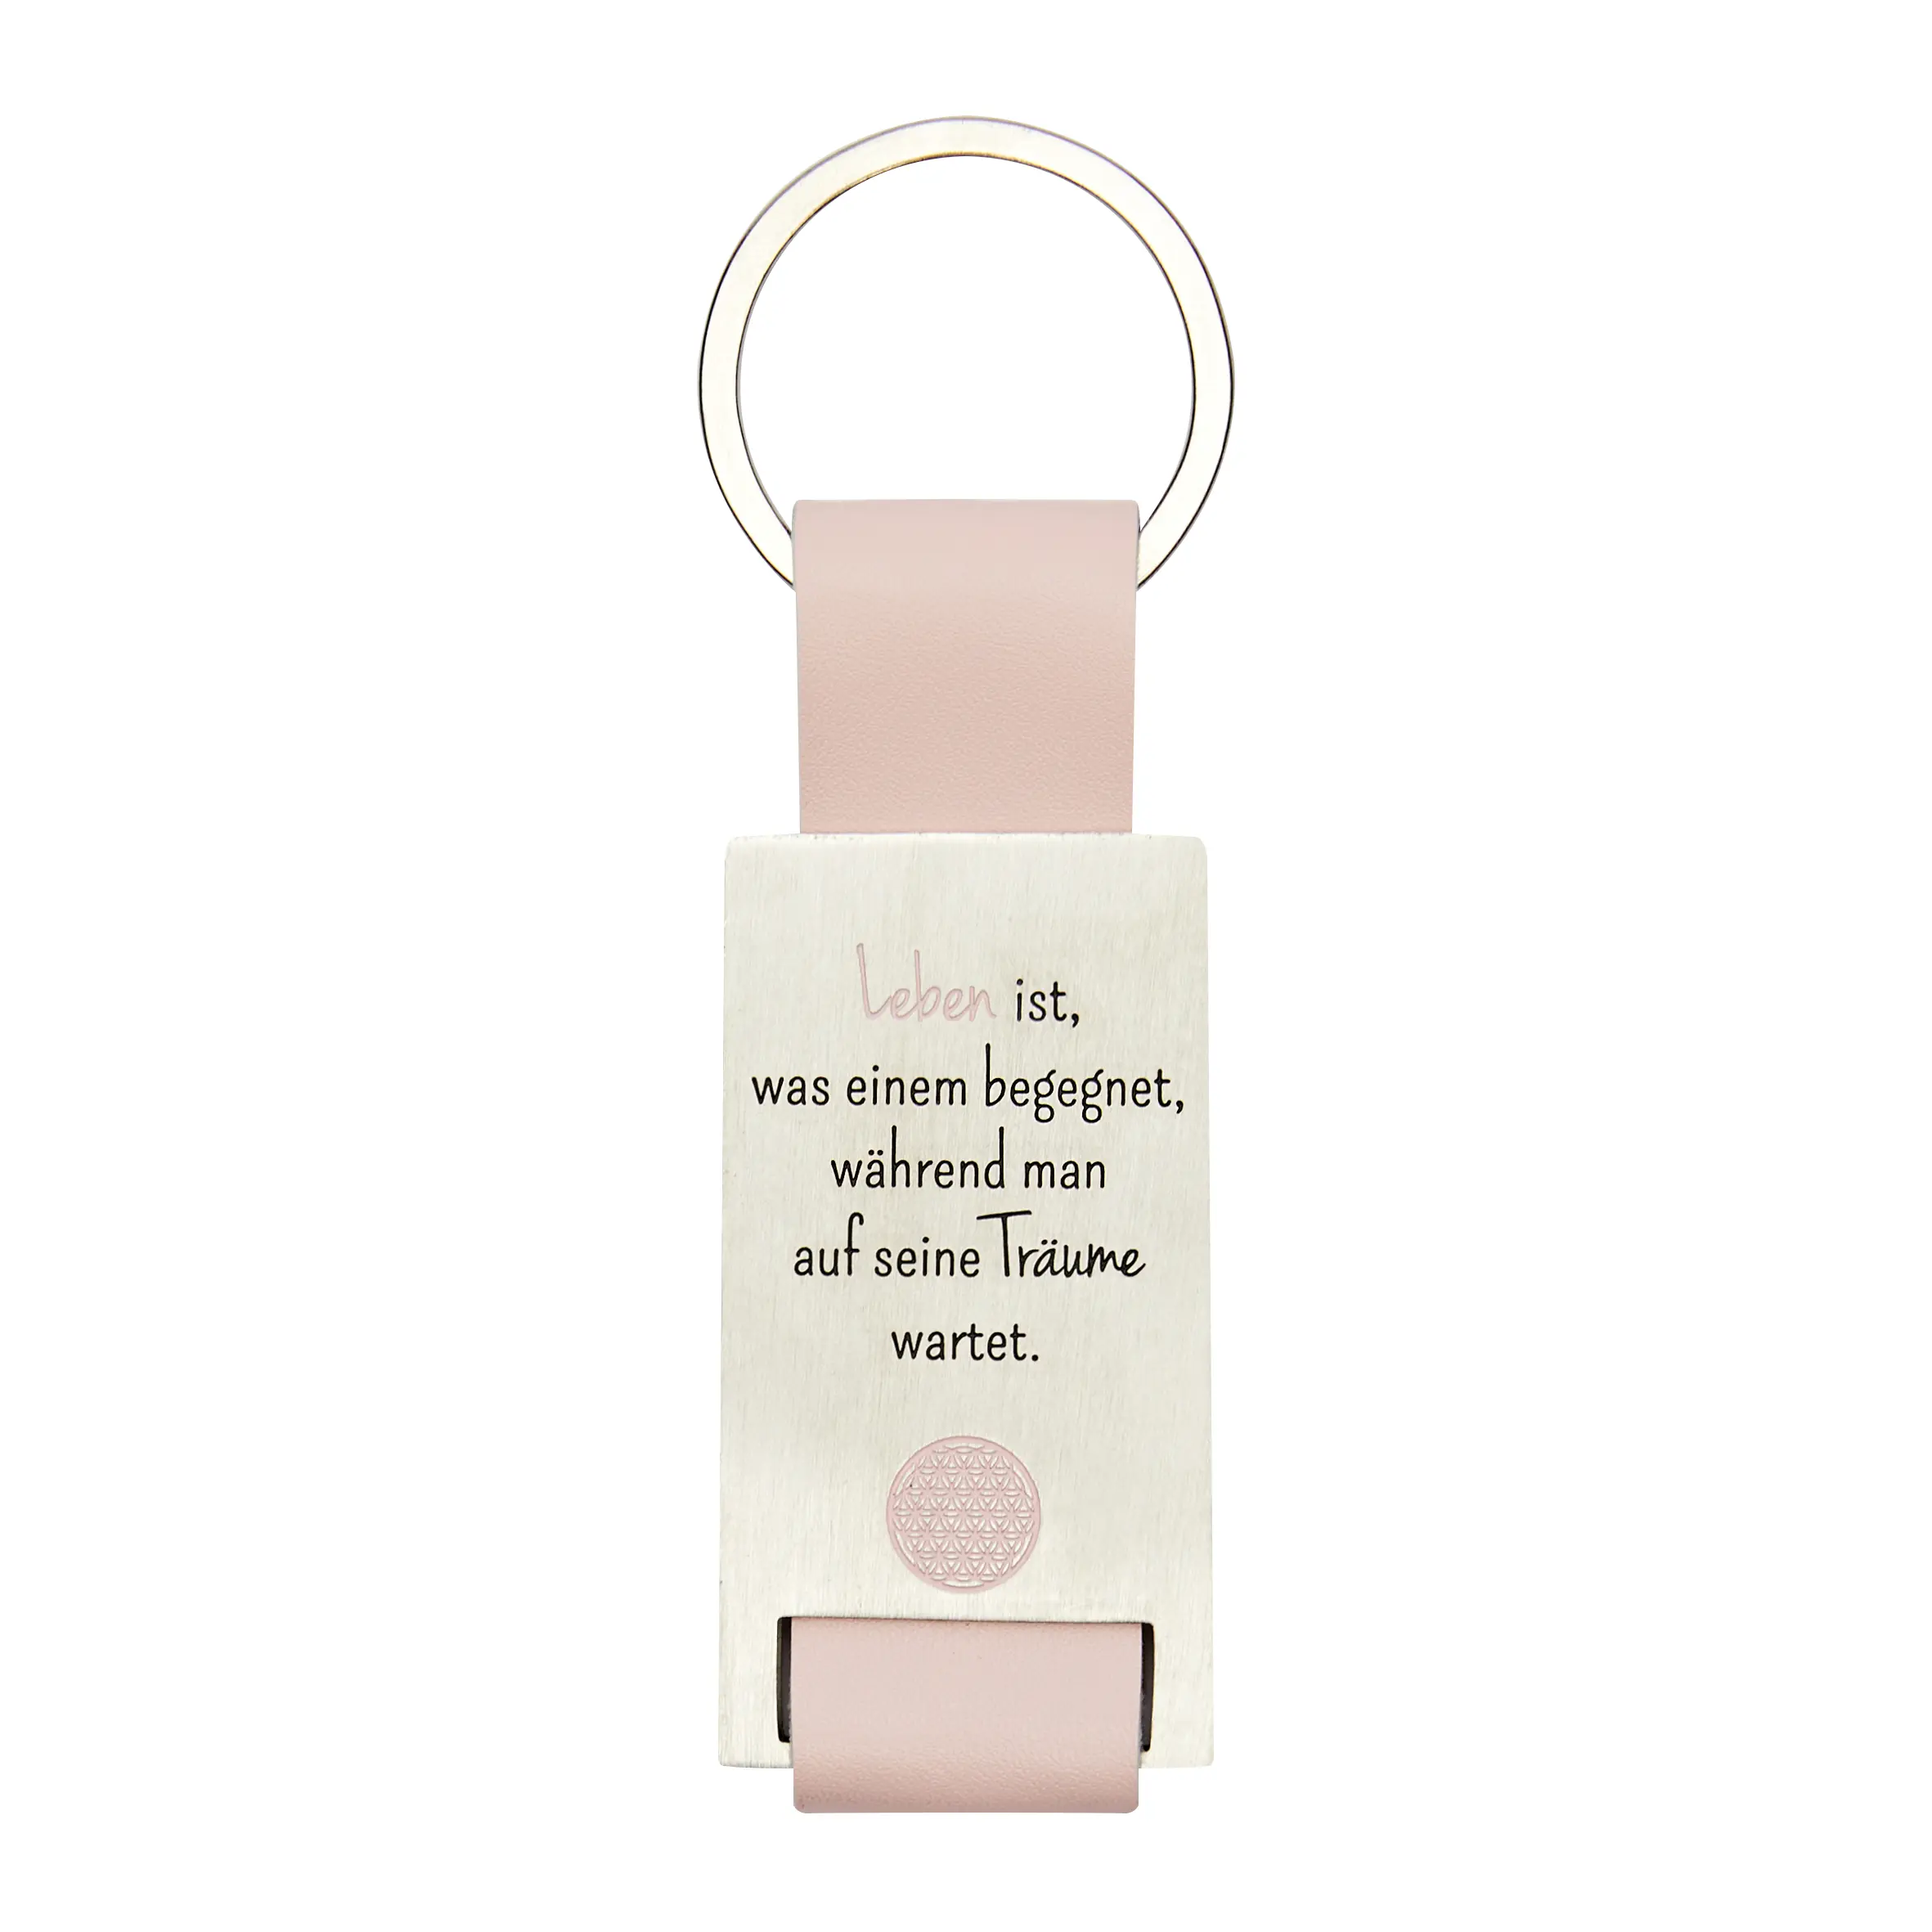 Schlüsselanhänger mit Spruch – Blume des Lebens, rosa